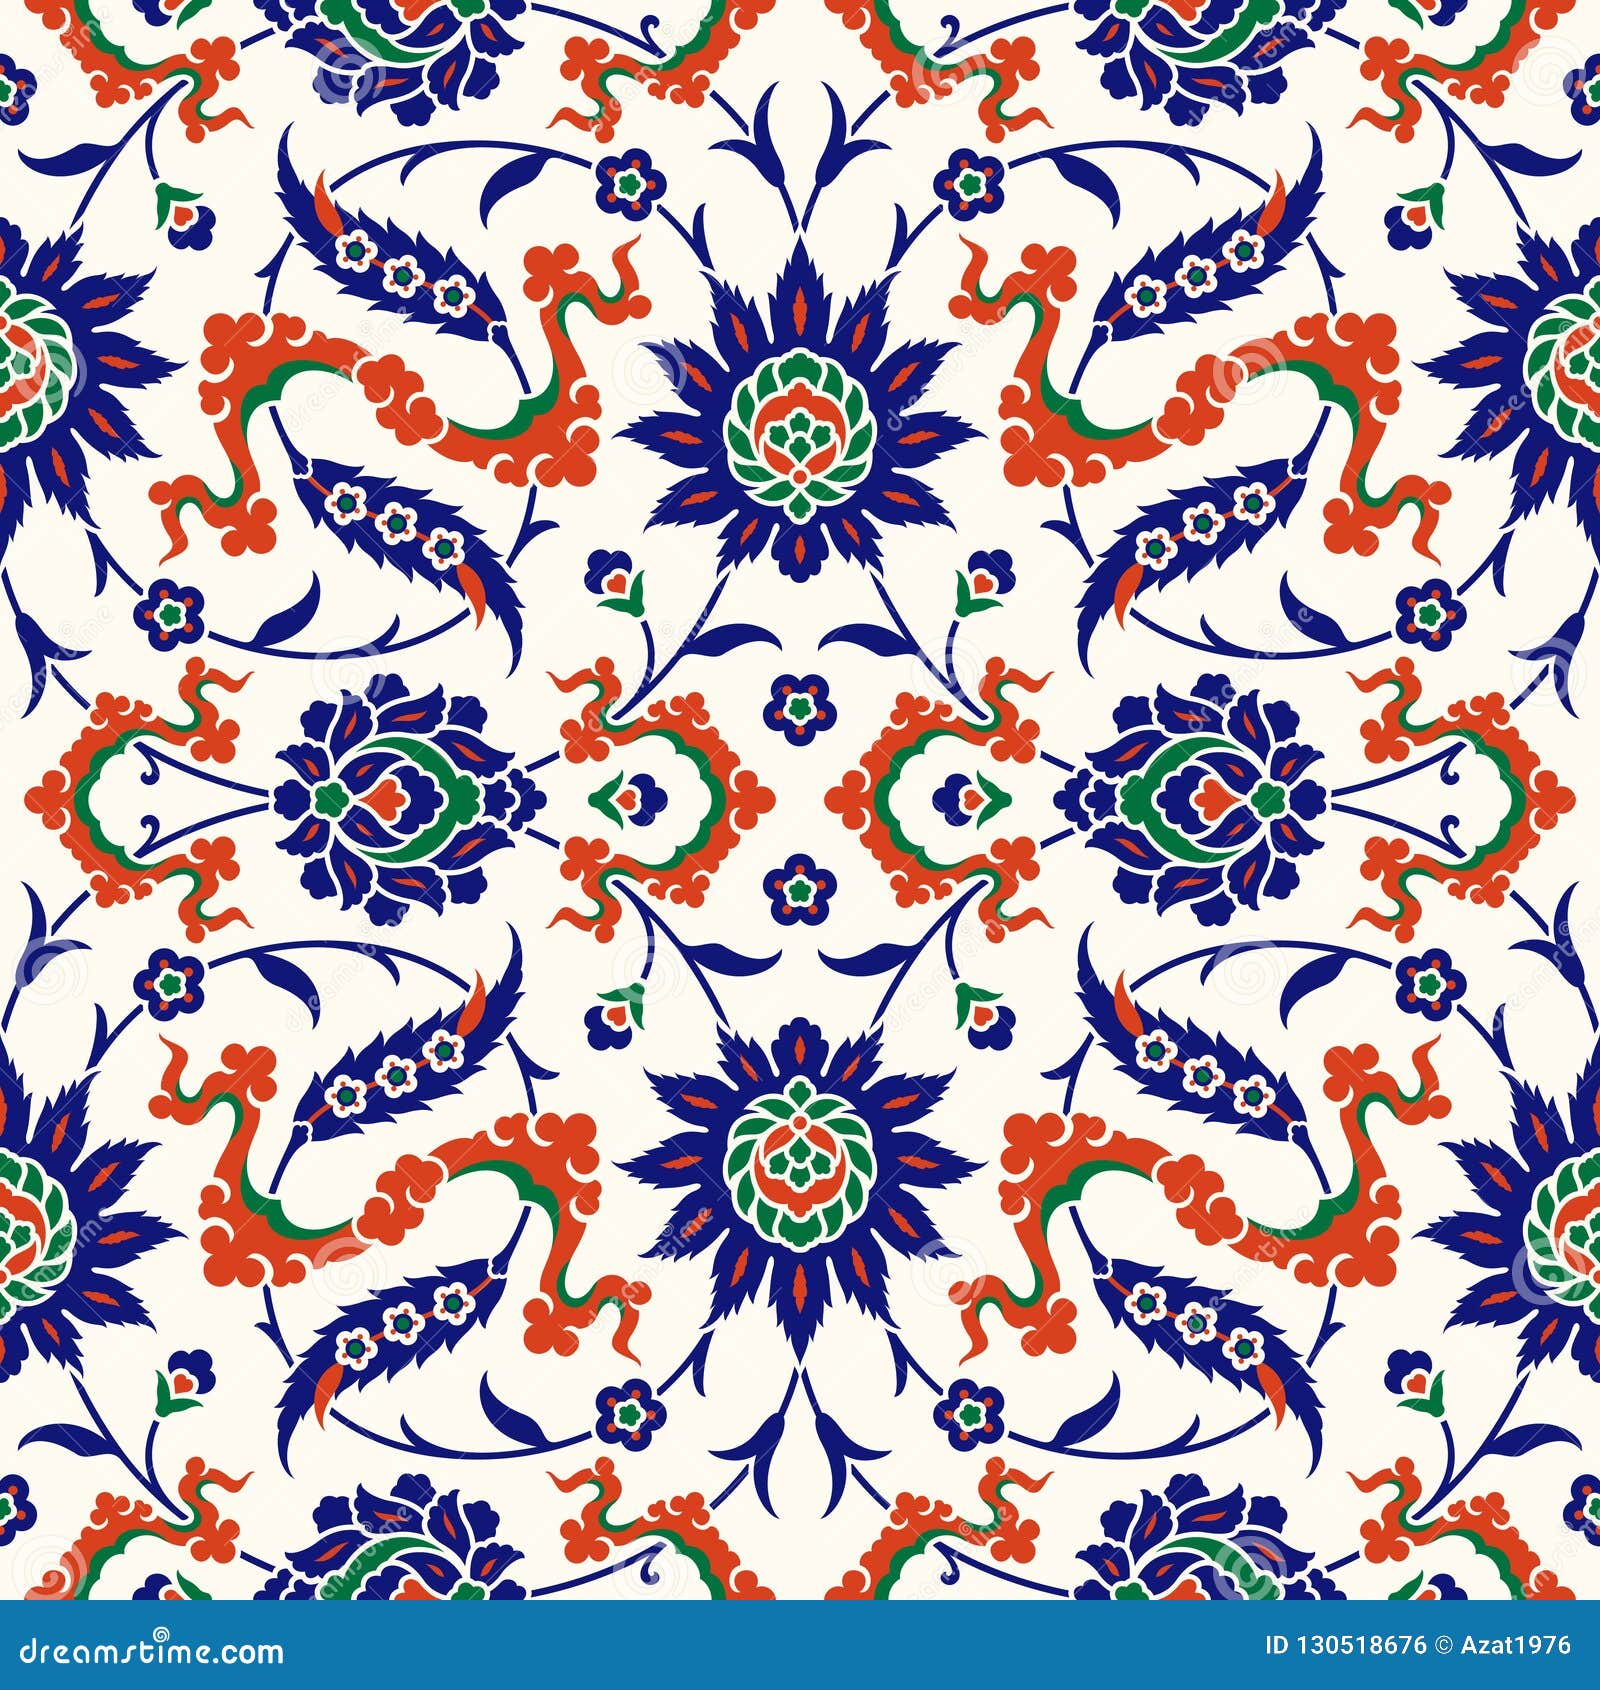 traditional turkish seamless pattern